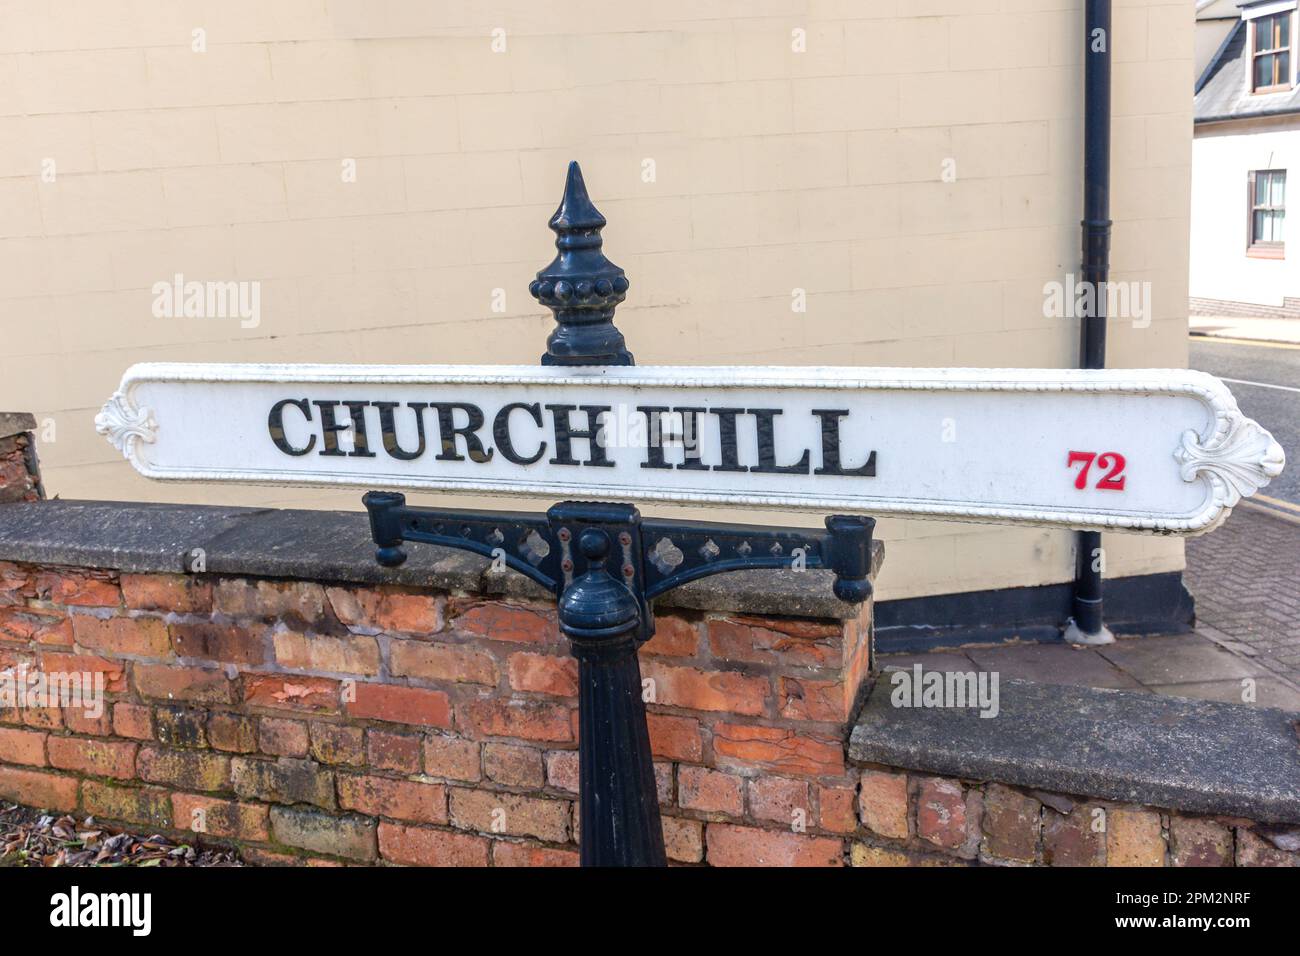 Panneau de route vintage, Church Hill, la ville royale de Sutton Coldfield, West Midlands, Angleterre, Royaume-Uni Banque D'Images